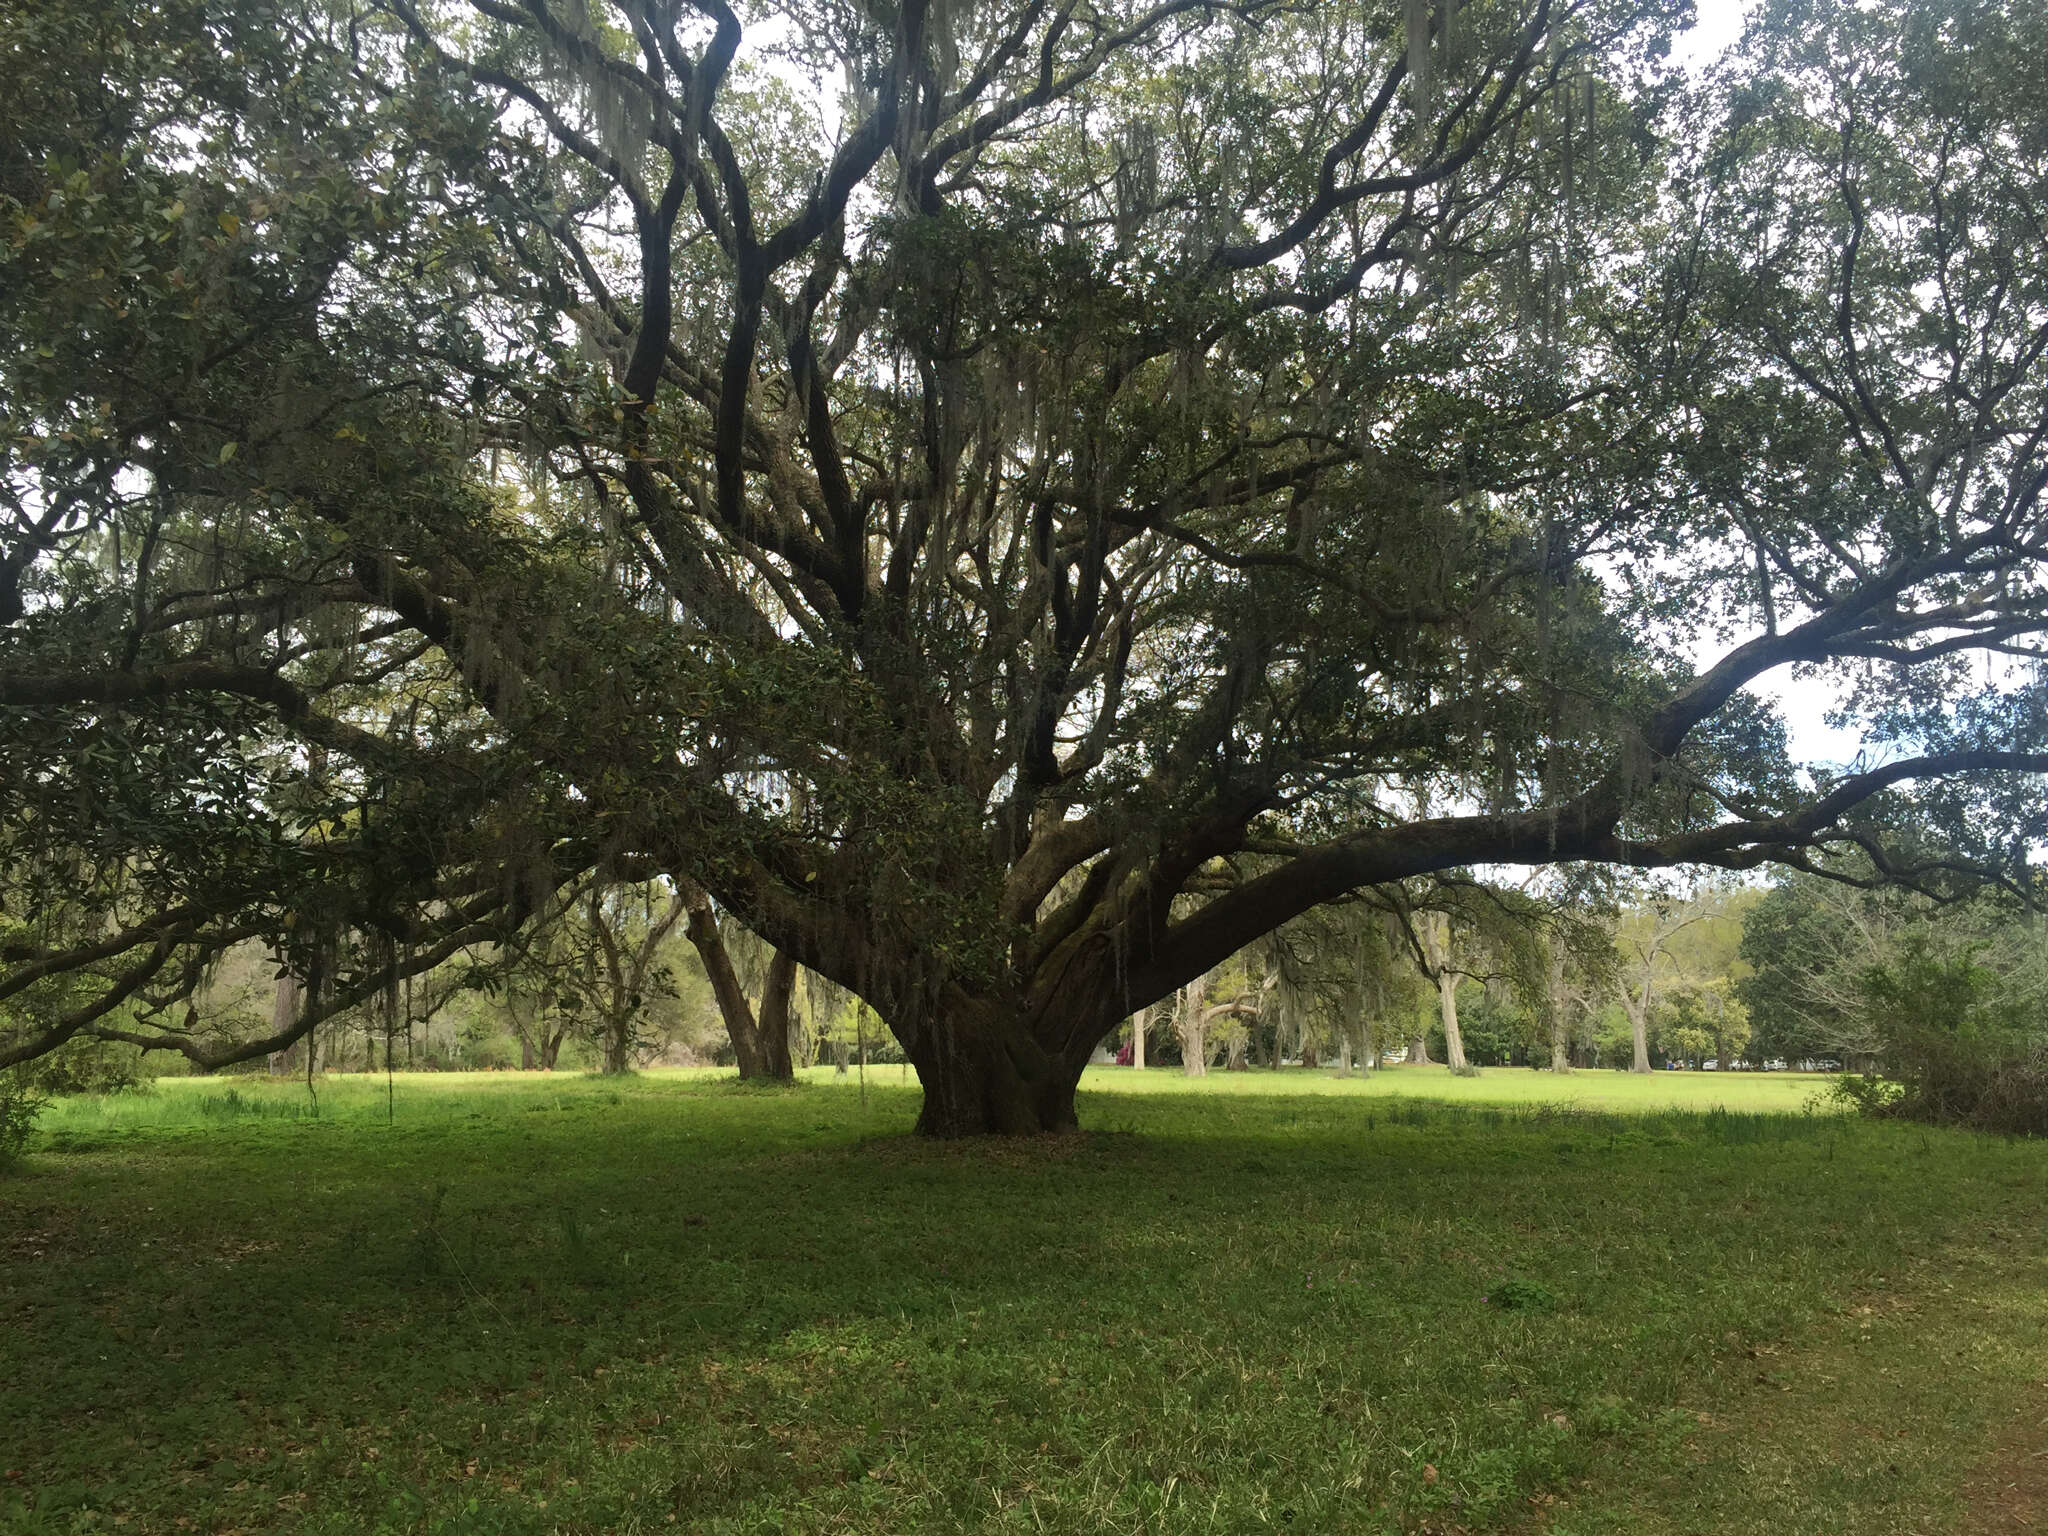 Image of Southern Live Oak